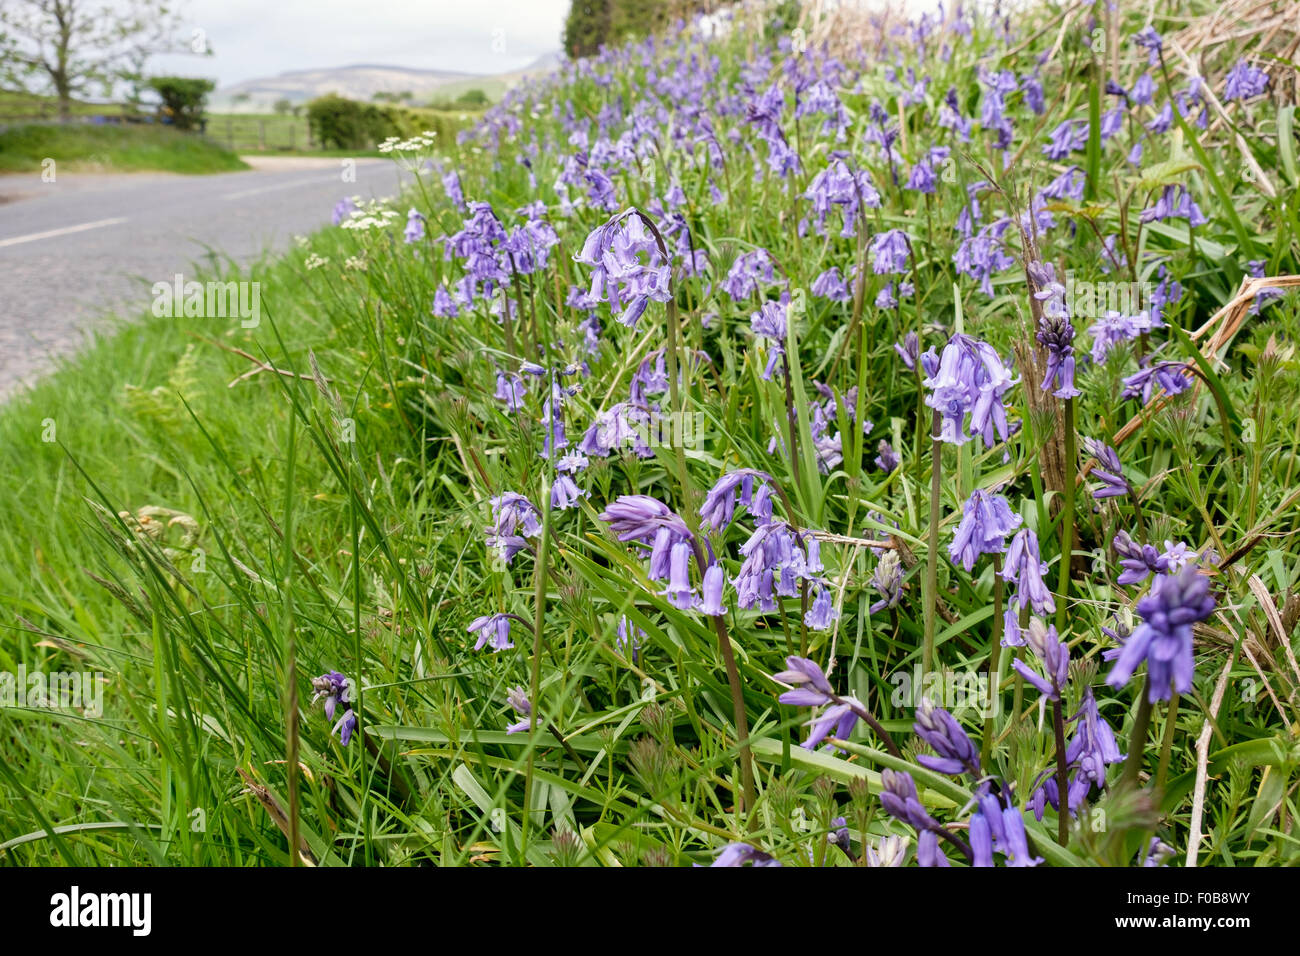 Gras am Straßenrand kurz Hecke mit Glockenblumen wilde Blumen wachsen neben einer Landstraße im Frühjahr/Sommer. Schottland, Großbritannien, Großbritannien Stockfoto